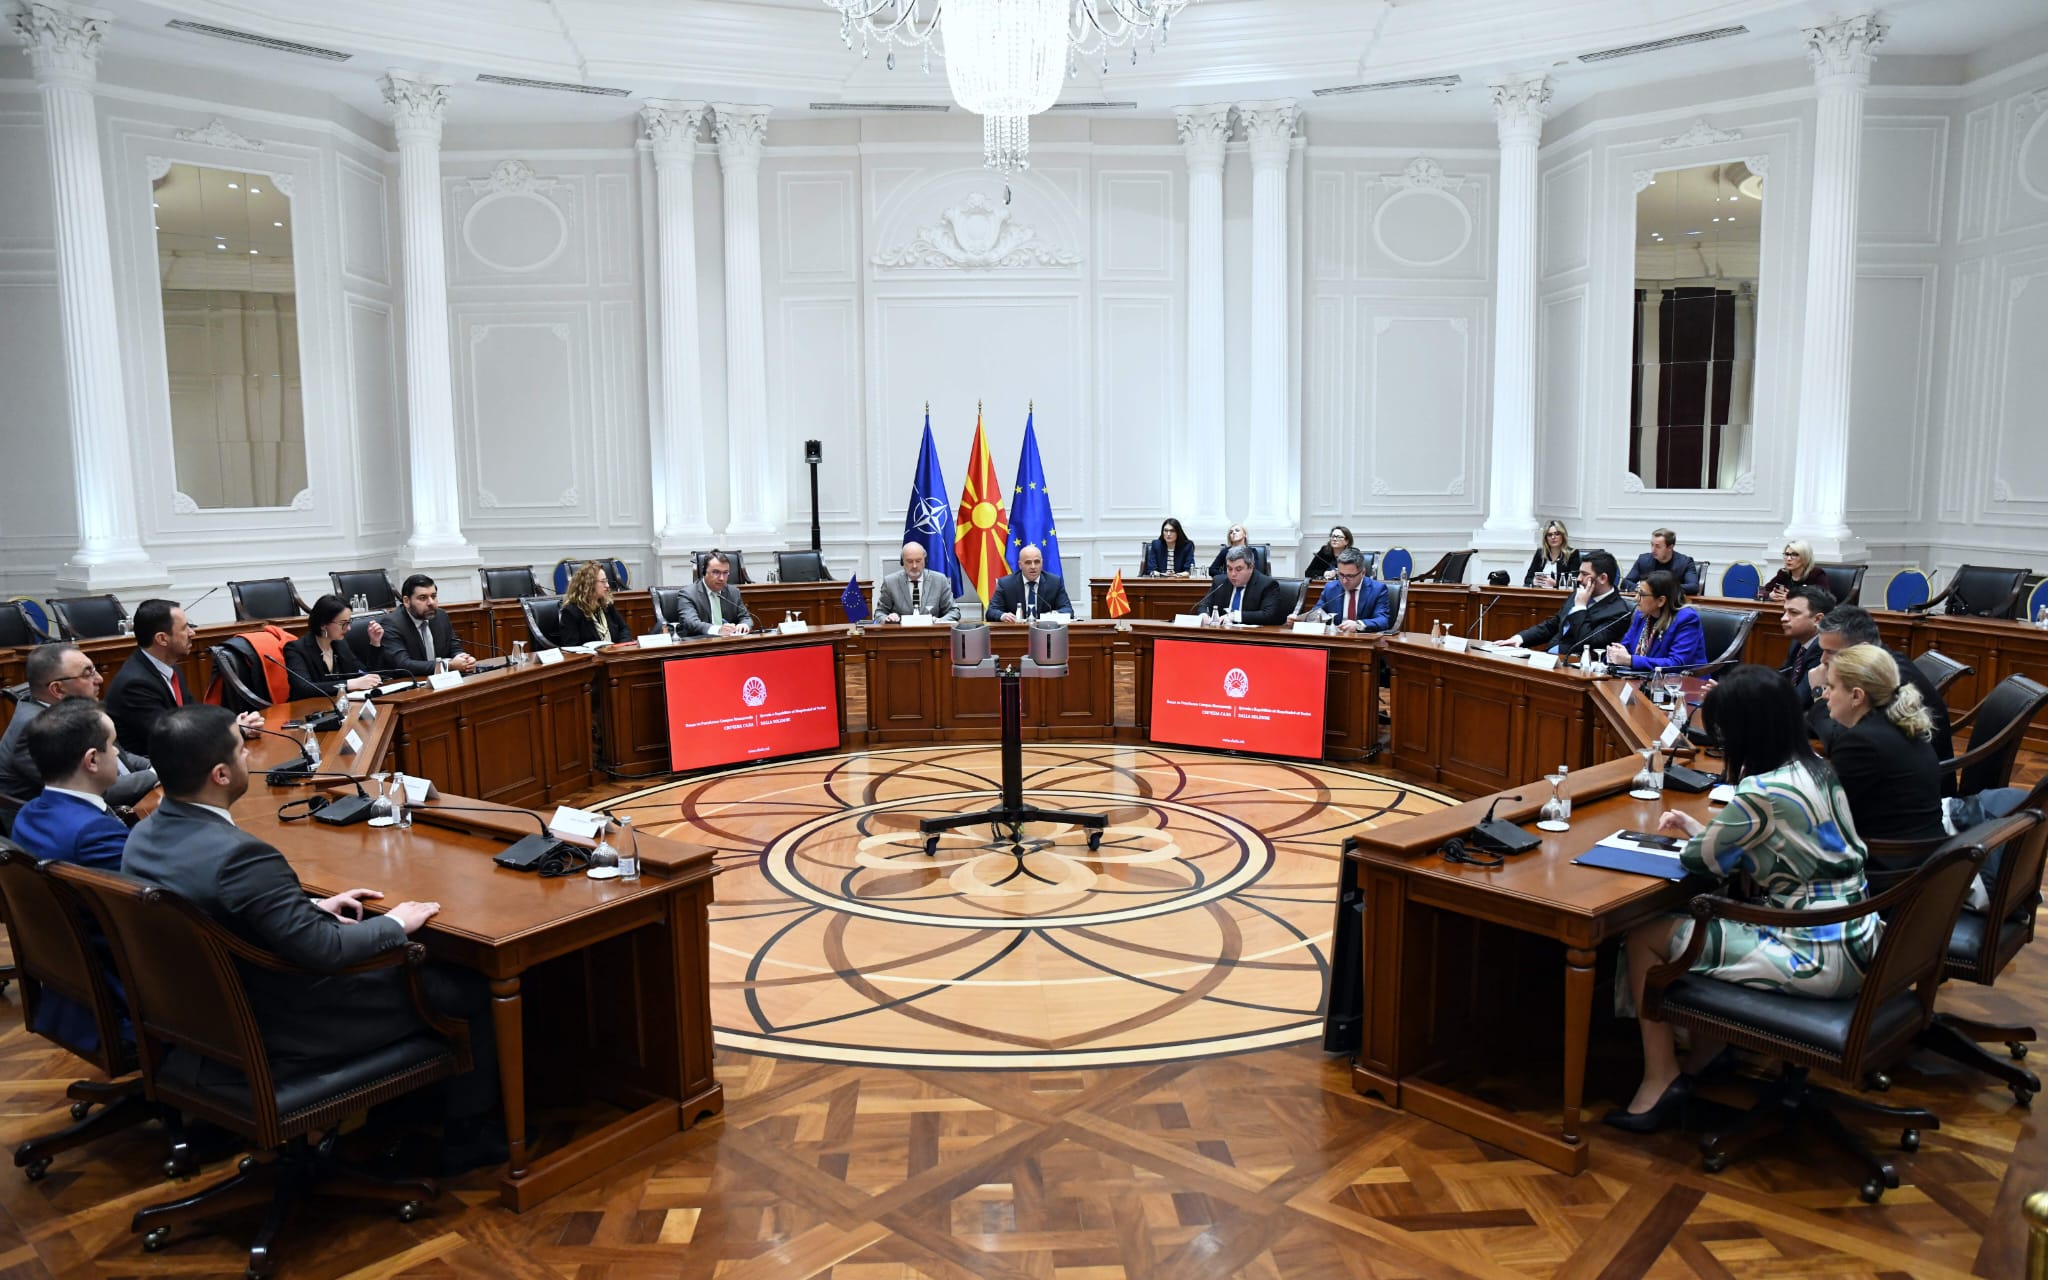 Qeveria e Maqedonisë sërish me lëshime, nuk e ka përditësuar ueb-faqen me ministrat e rinj